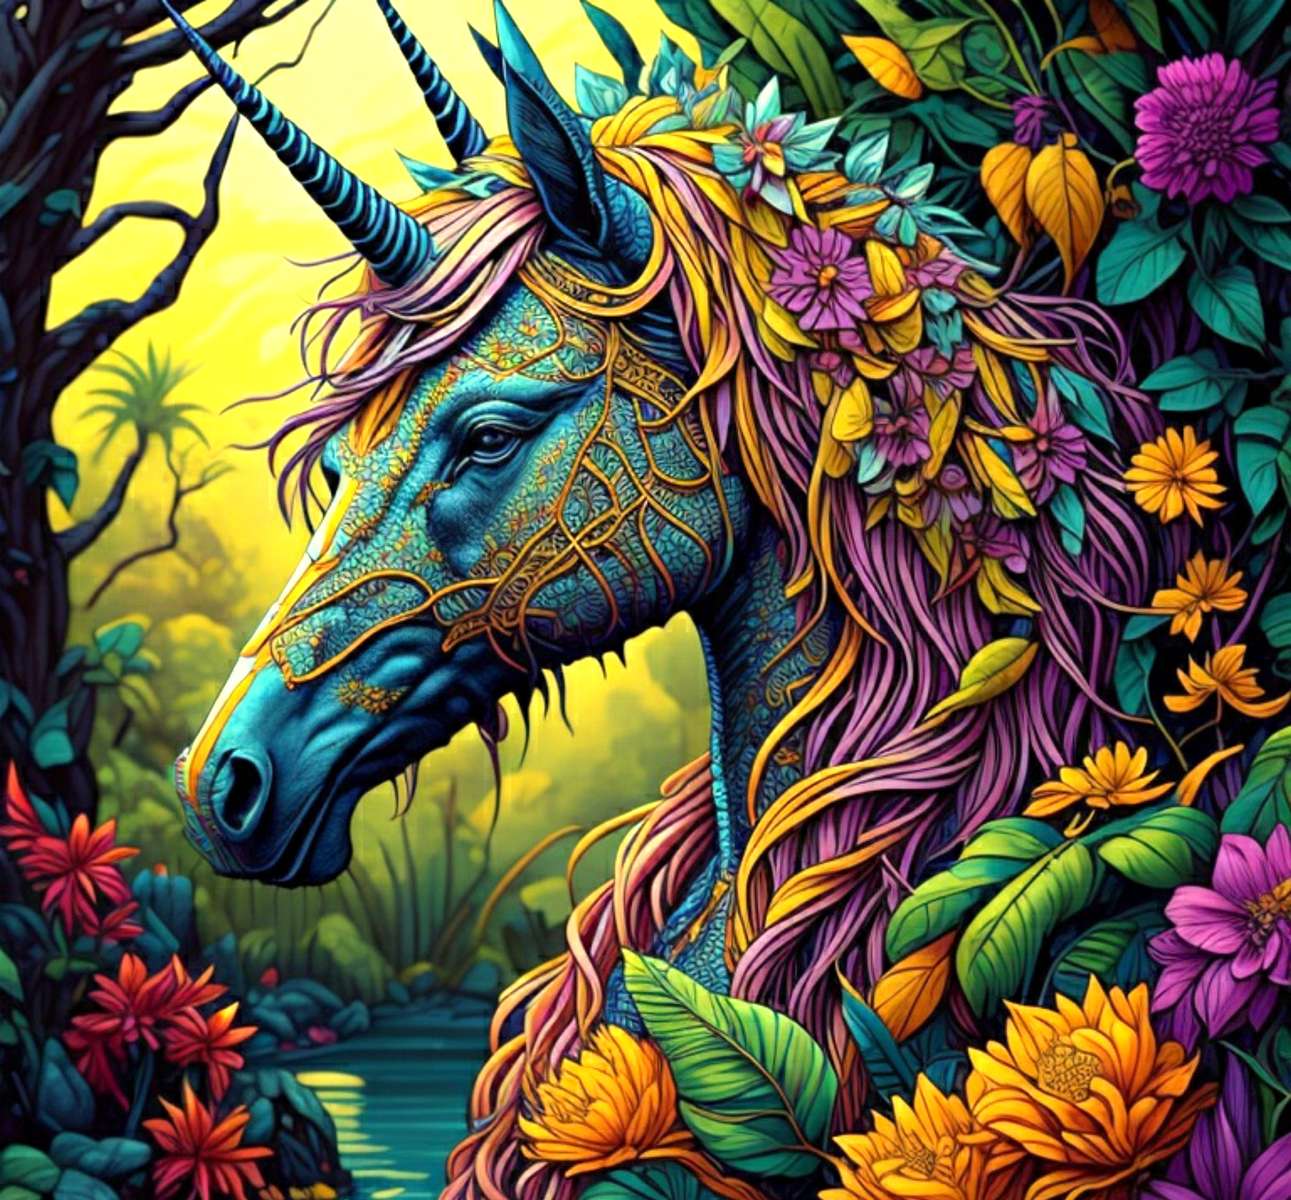 Unicorn (fantasy image) jigsaw puzzle online